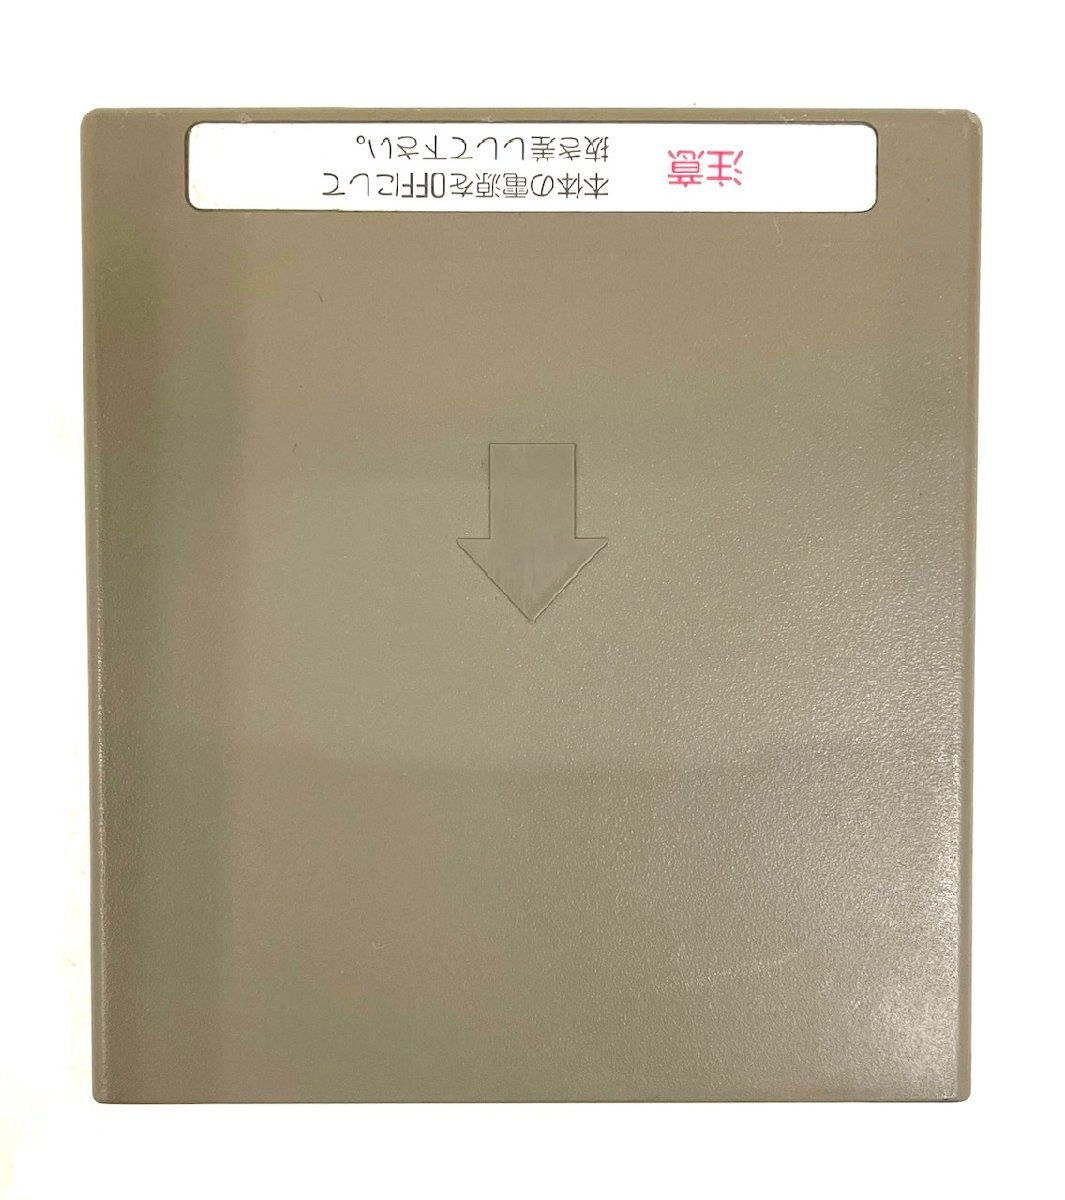 【レトロ】 NEC 日本電気 日本語シリアルプリンタ PC-PR201 1983年 初期型パソコン ドットインパクト方式 漢字プリンタ ヴィンテージの画像8